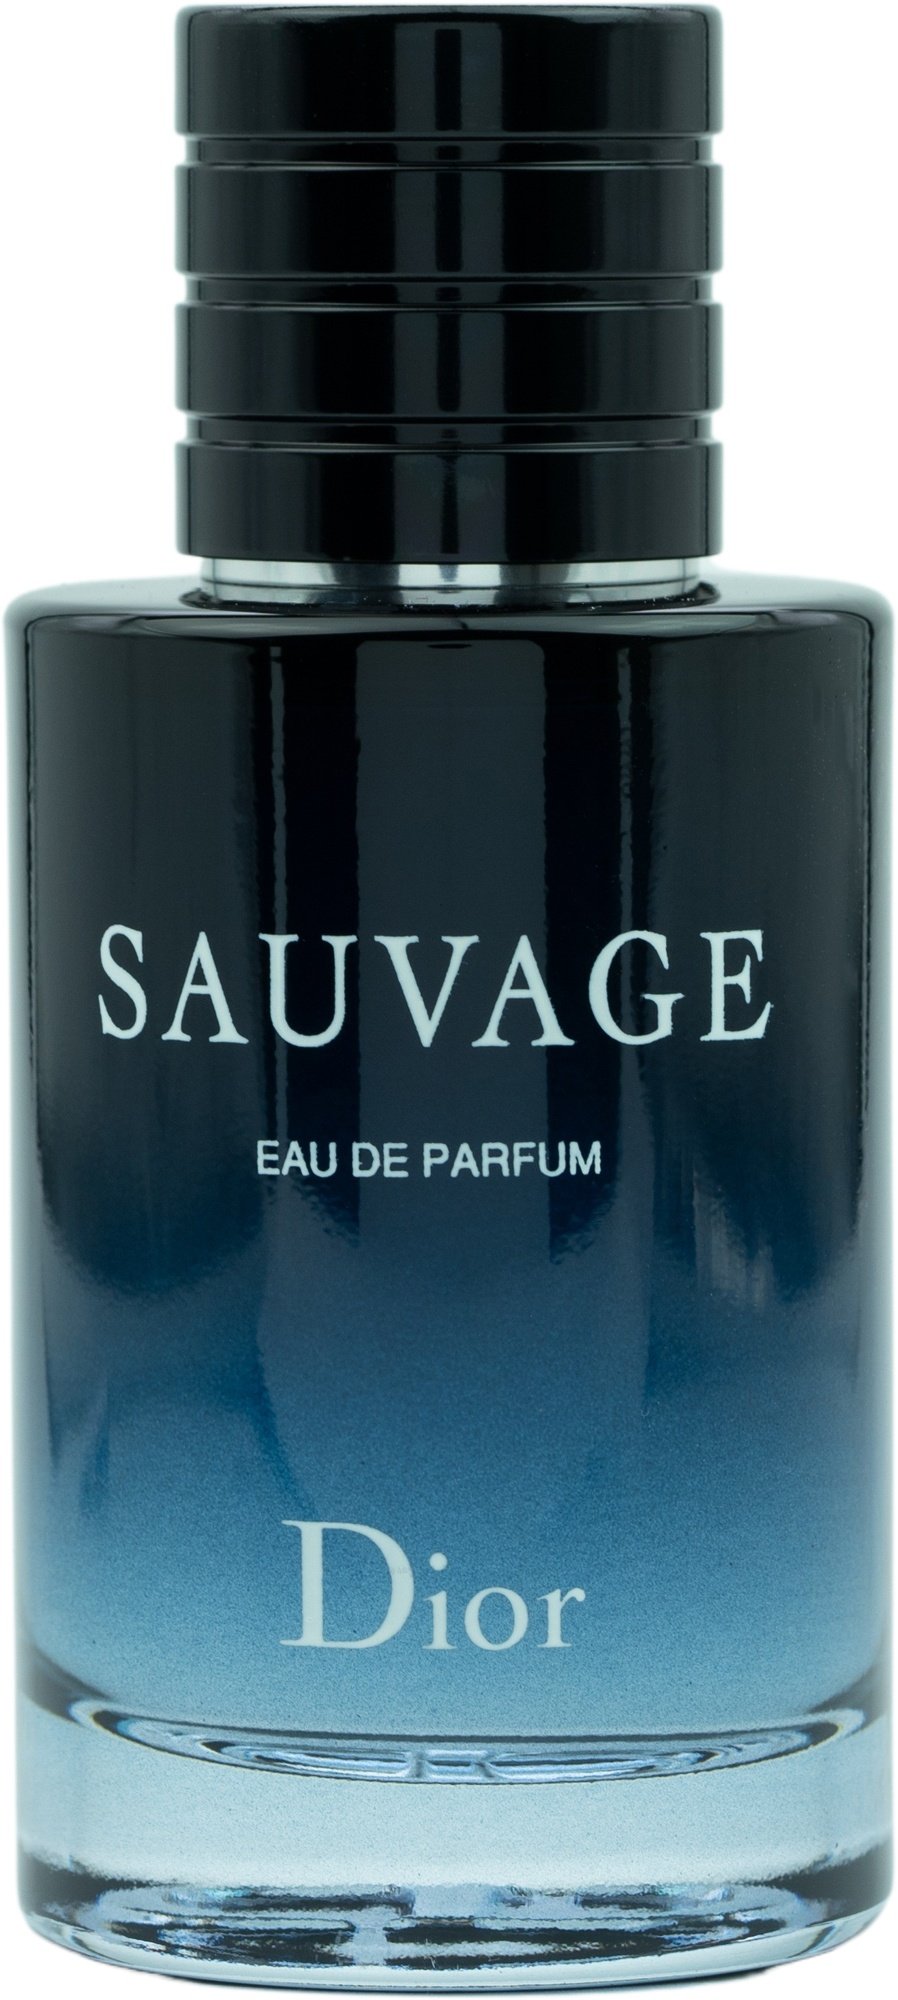 Bild von Sauvage Eau de Parfum 100 ml